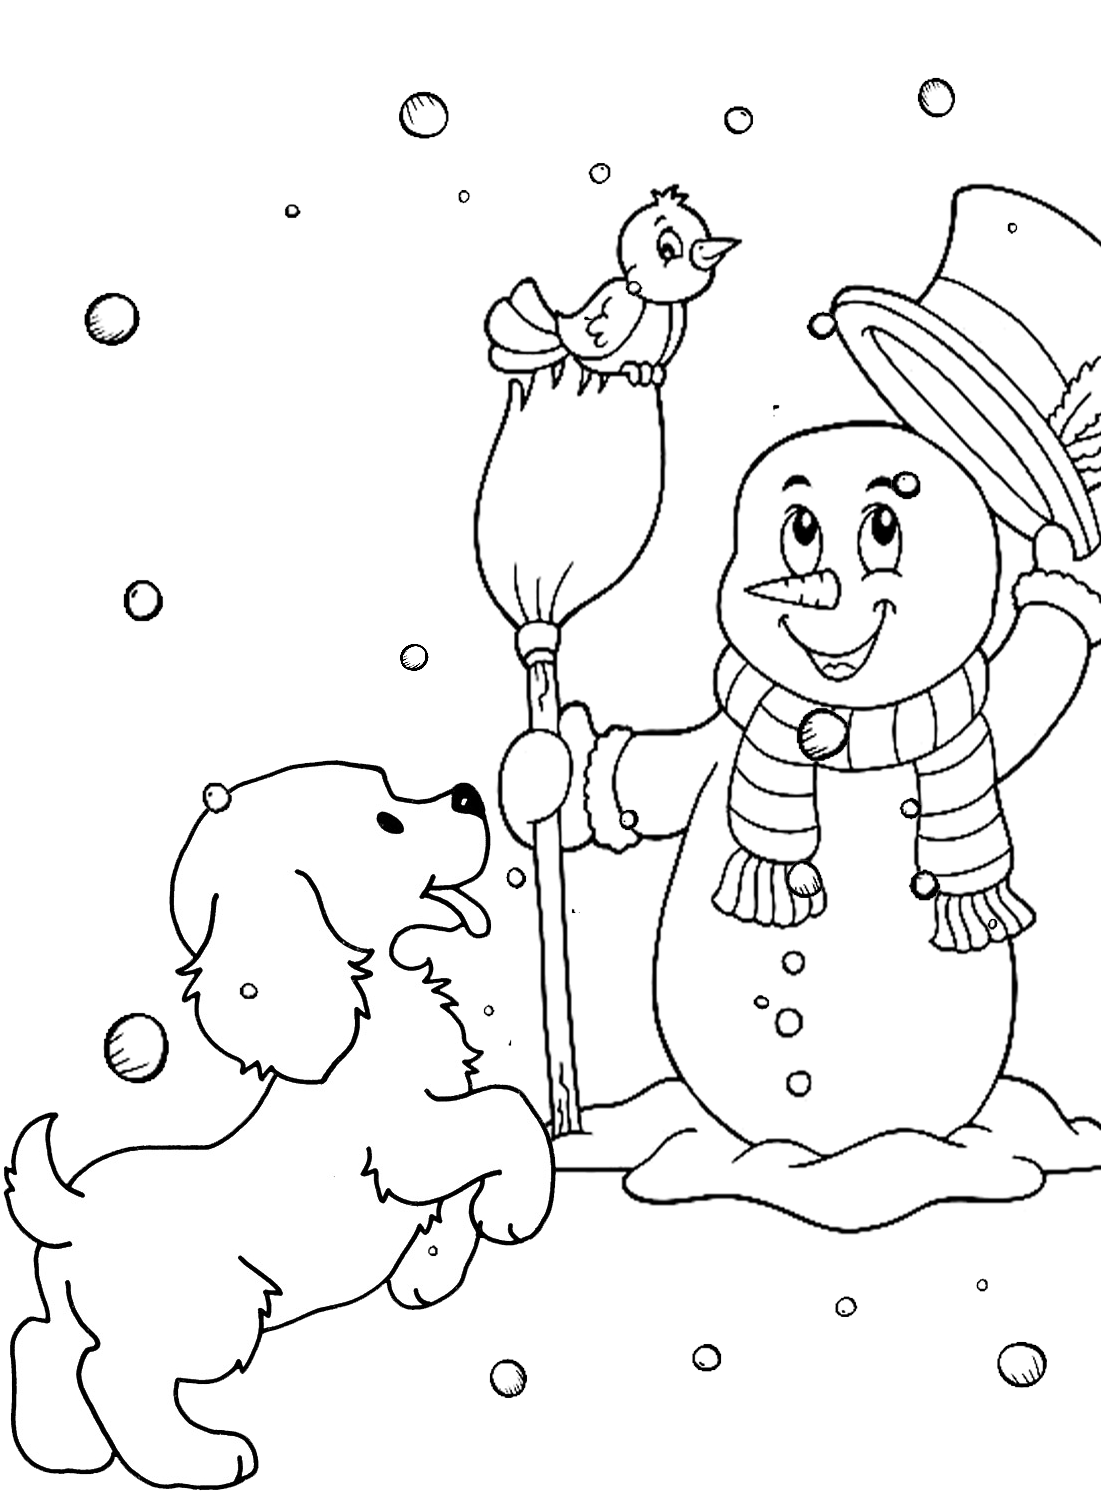 Página colorida de boneco de neve e cachorrinho